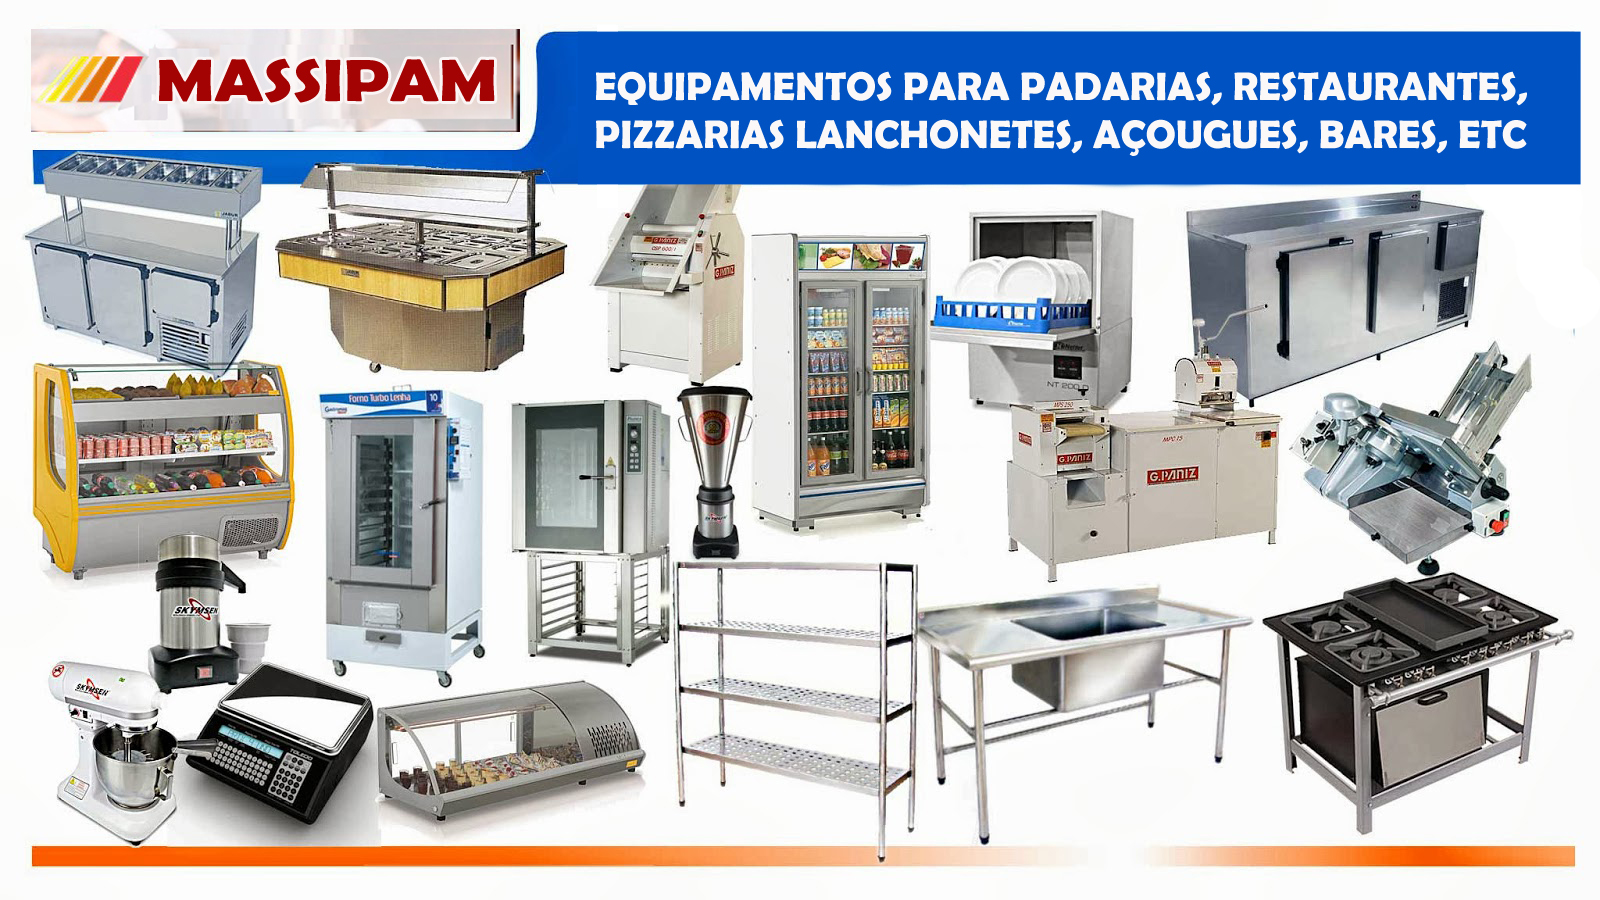 Maquinas e equipamentos usados para padarias lanchonetes bares restaurantes pizzarias 